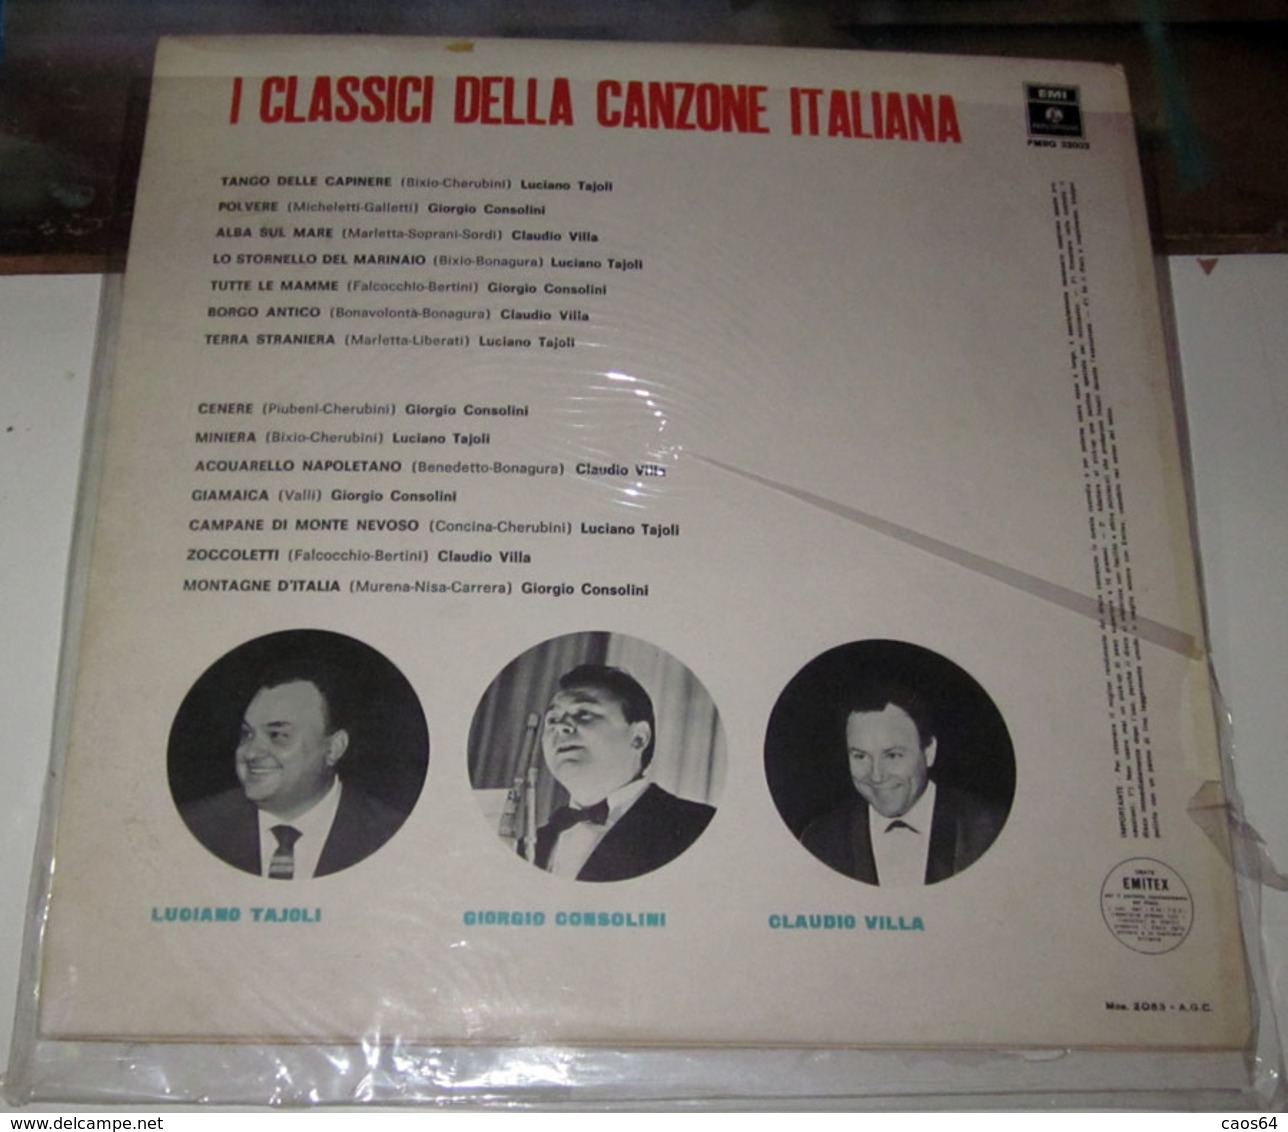 LUCIANO TAJOLI GIORGIO CONSOLINI CLAUDIO VILLA I CLASSICI DELLA CANZONE ITALIANA - Other - Italian Music